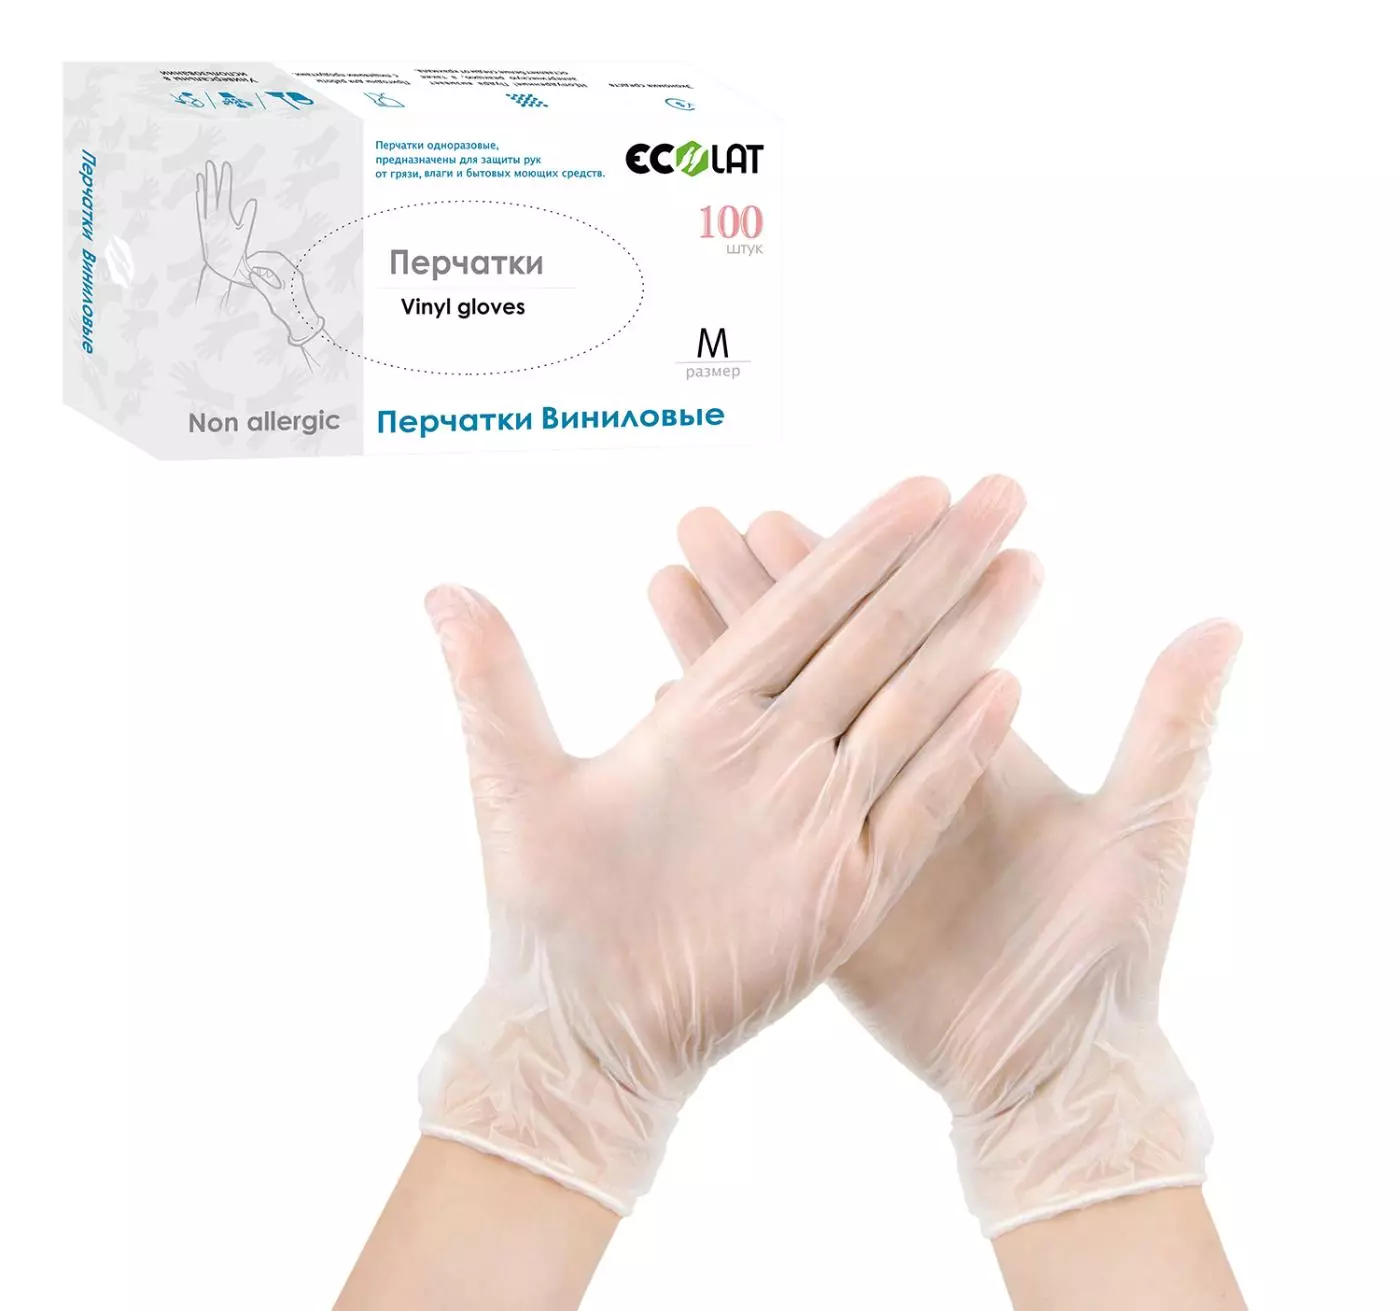 Виниловые перчатки EcoLat 100 шт./уп. размер M, 1021/M